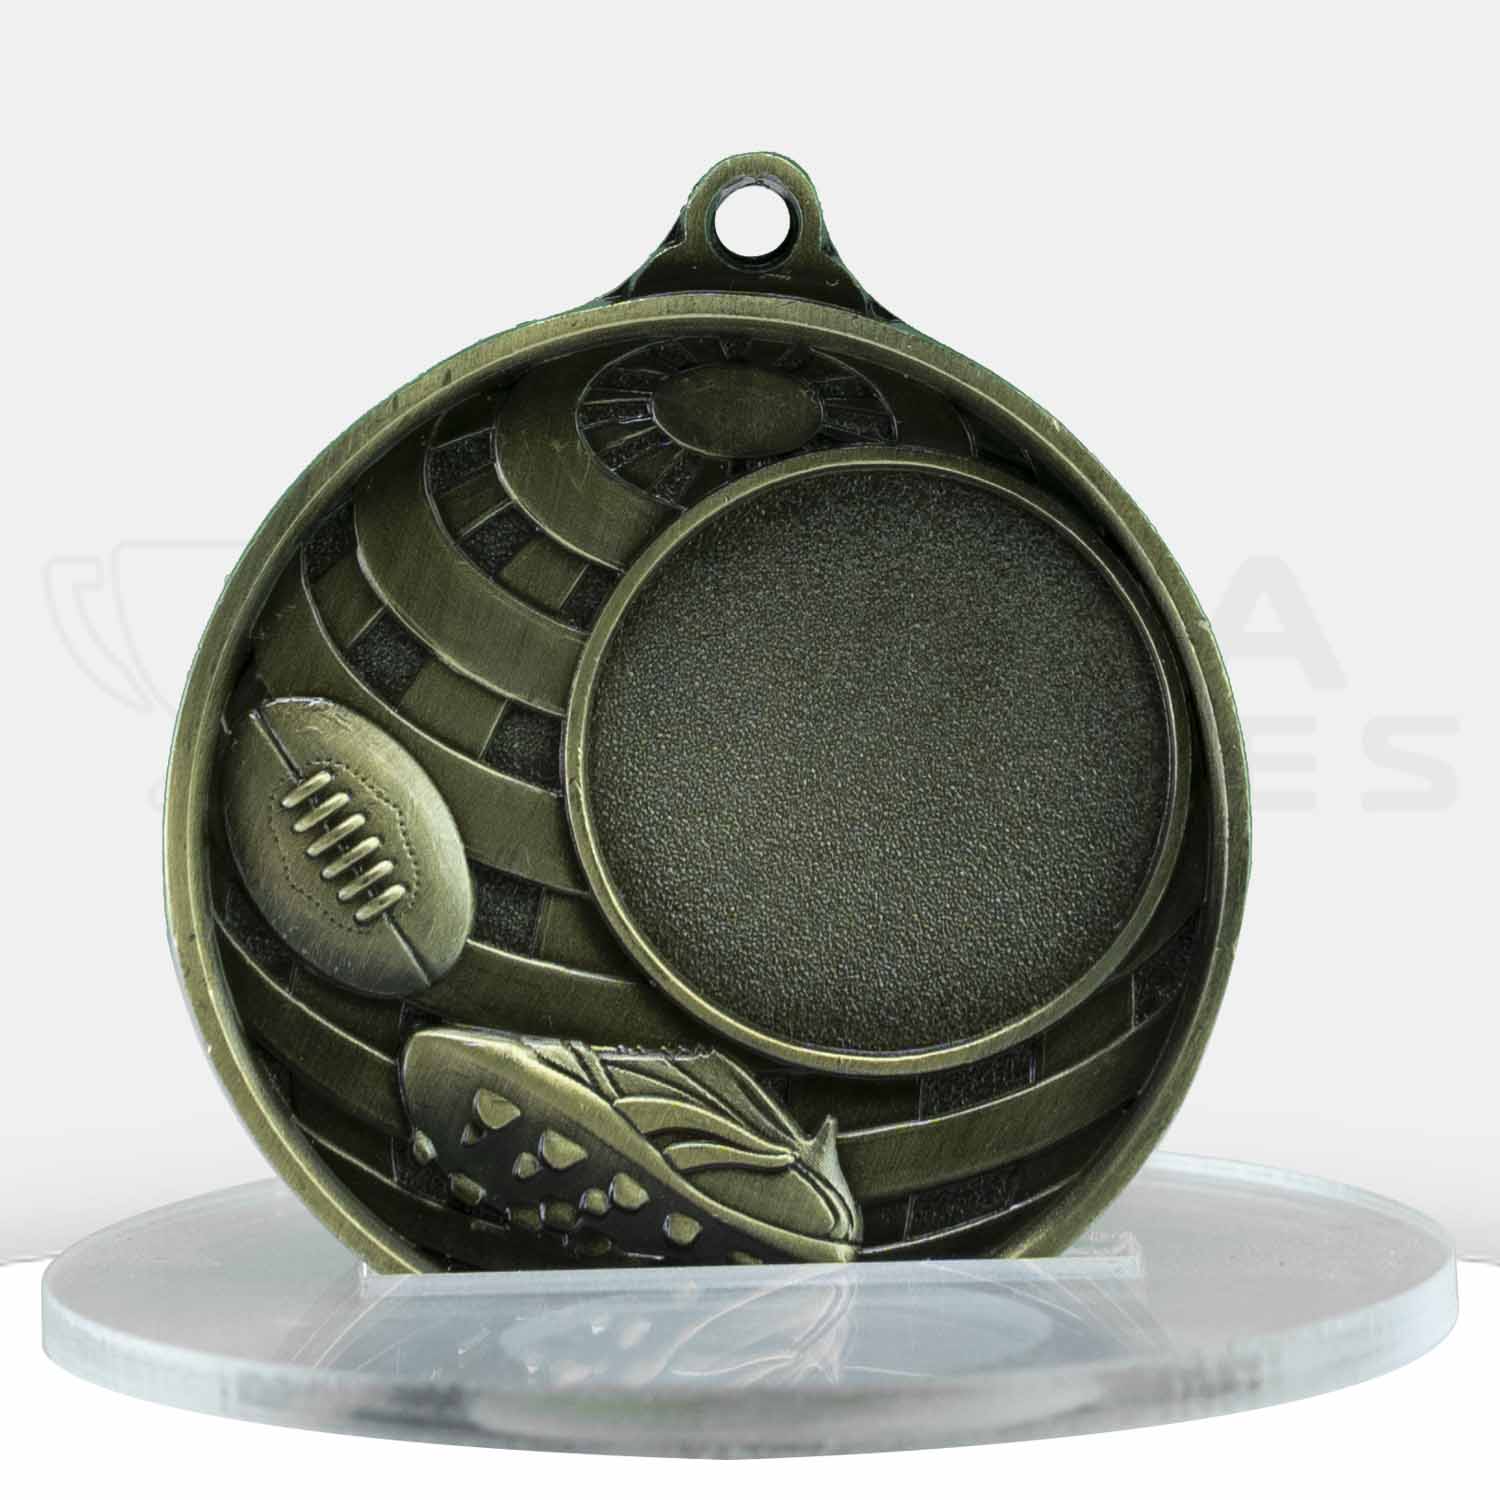 global-afl-logo-medal-1073c-3g-front